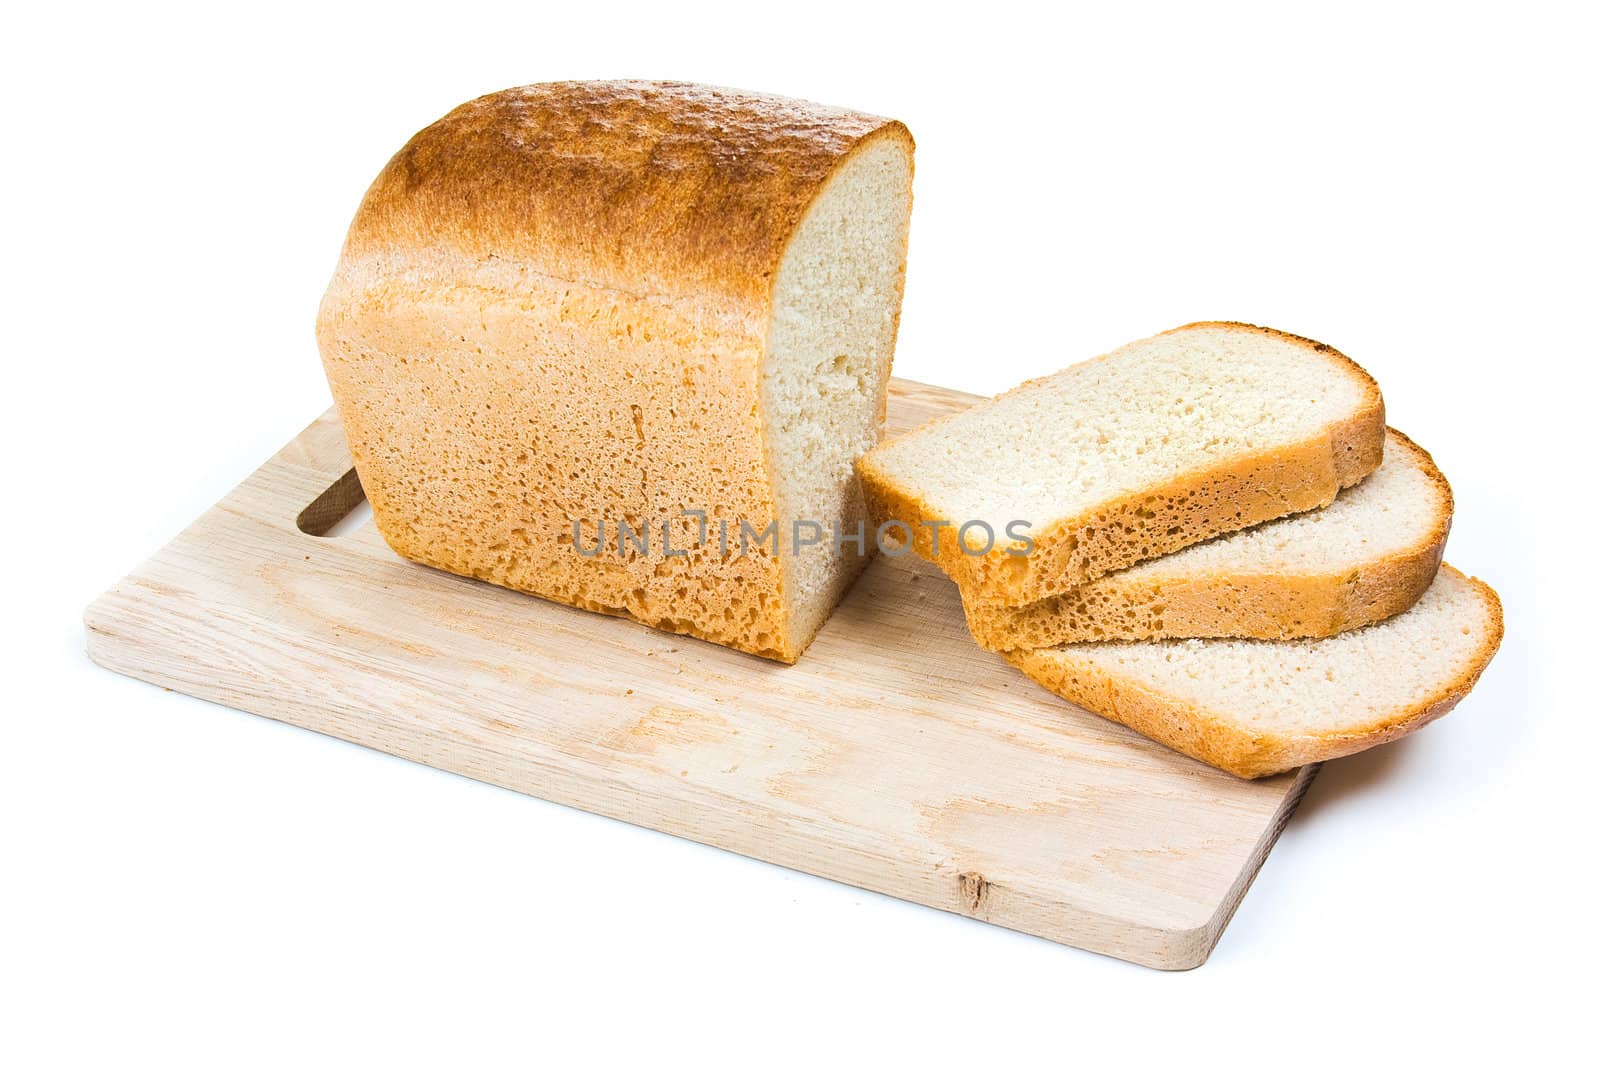 bread on a cutting board by oleg_zhukov